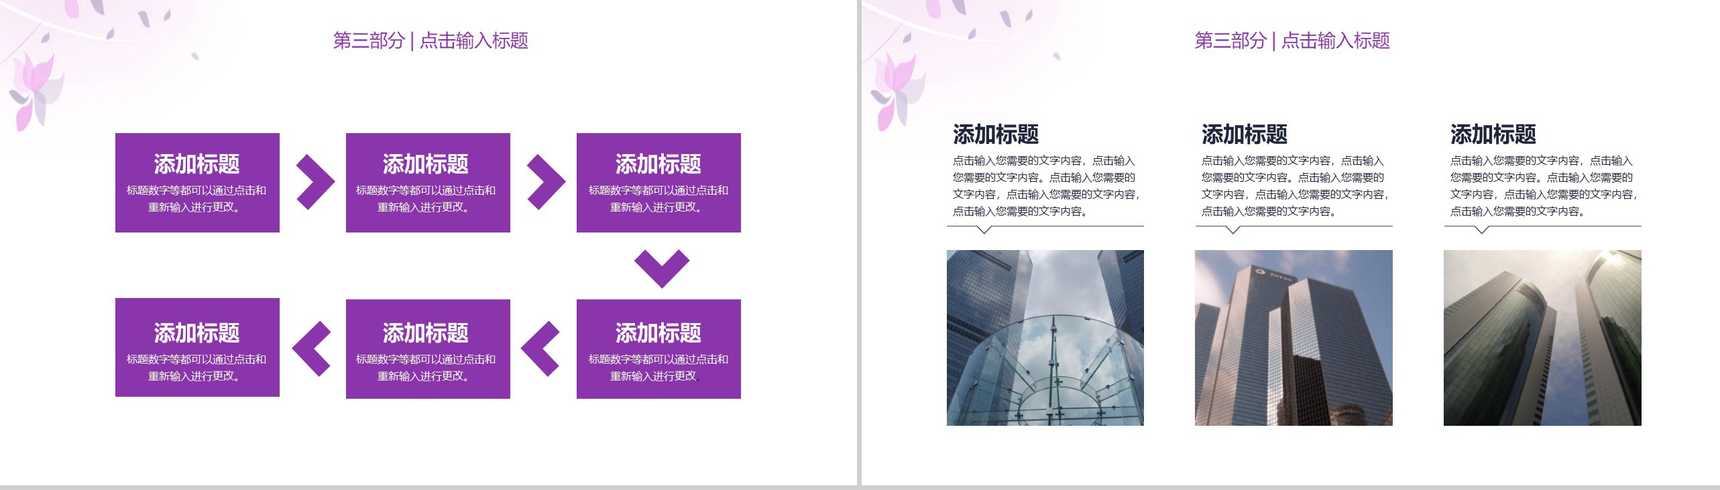 浅紫色简约唯美商务风企业宣传PPT模板-7